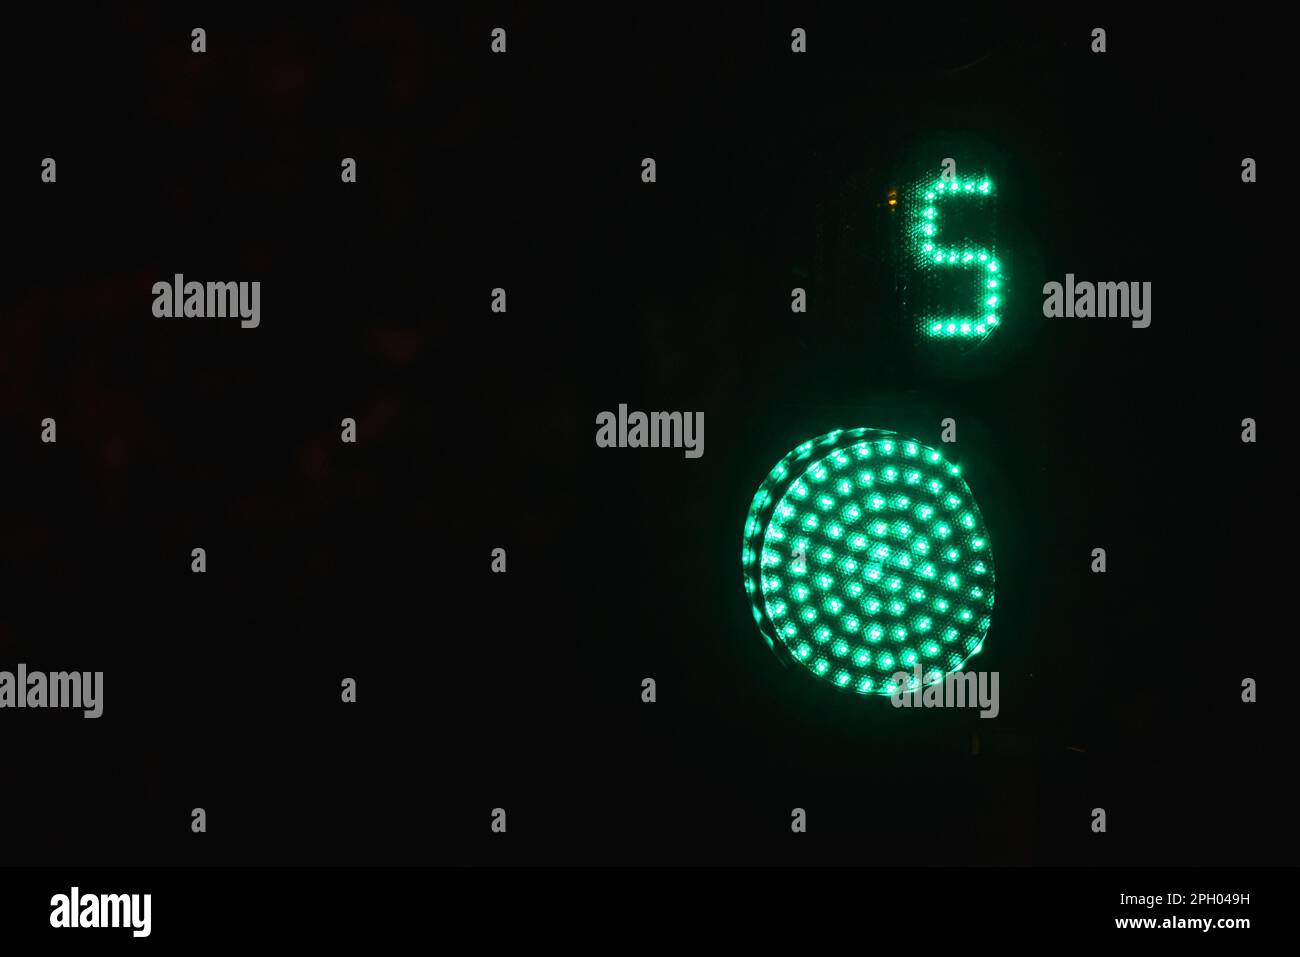 Fußgänger-Ampel mit Sekunden-Timer zeigt grün an Signal kann über schwarzen Nachthintergrund gehen Stockfoto